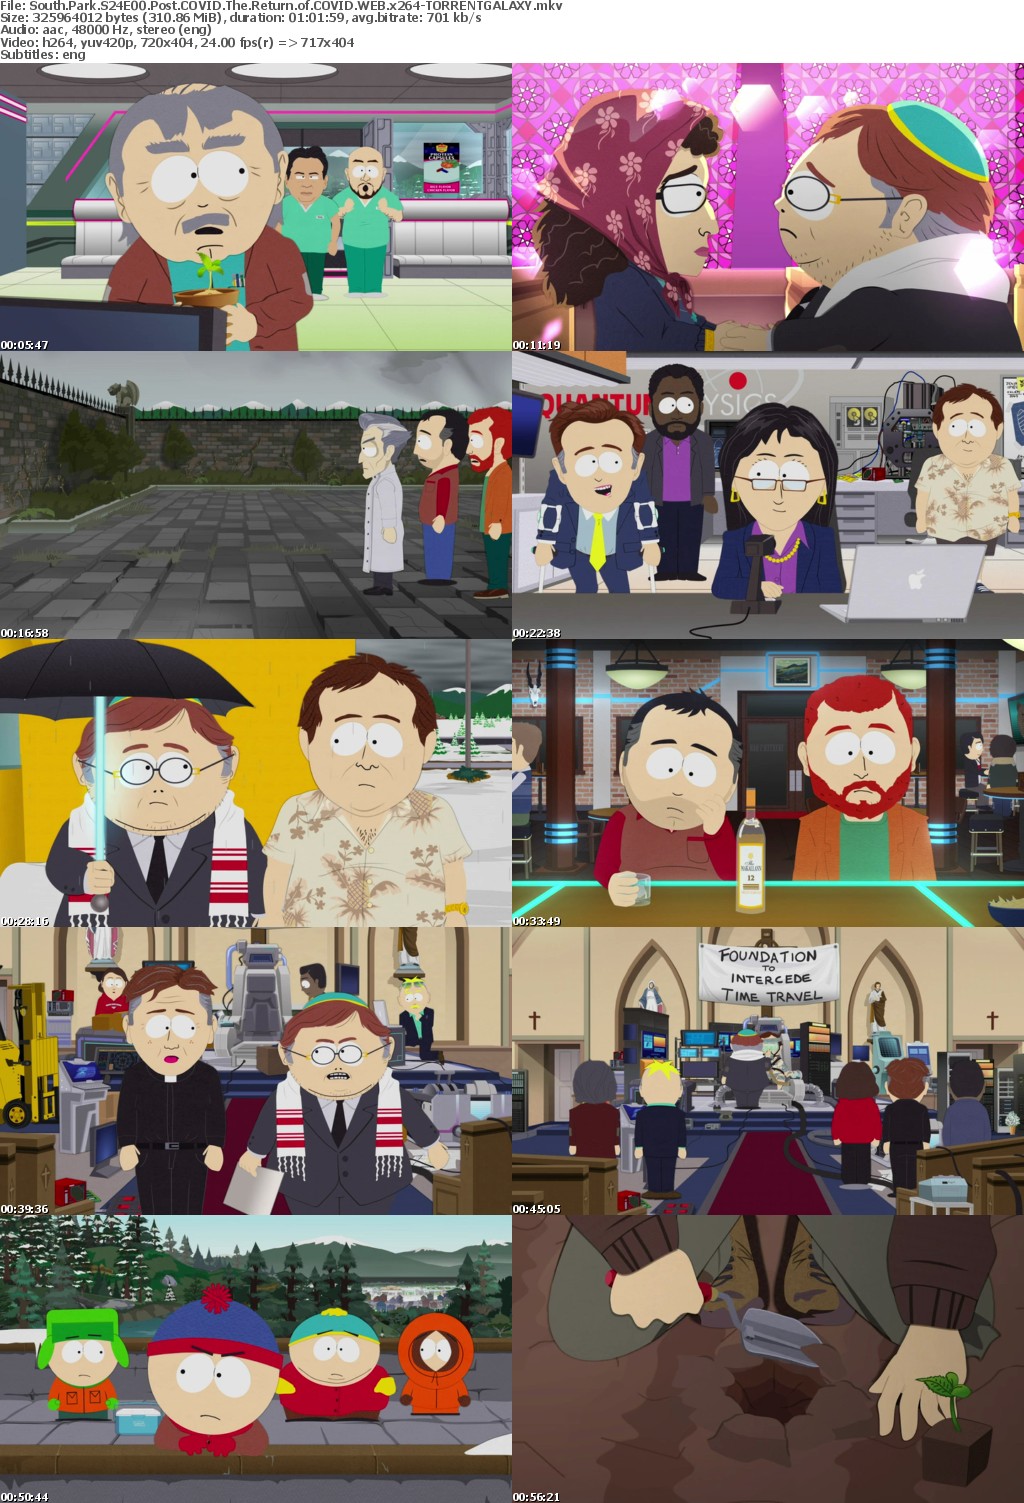 South Park S24E00 Post COVID The Return of COVID WEB x264-GALAXY